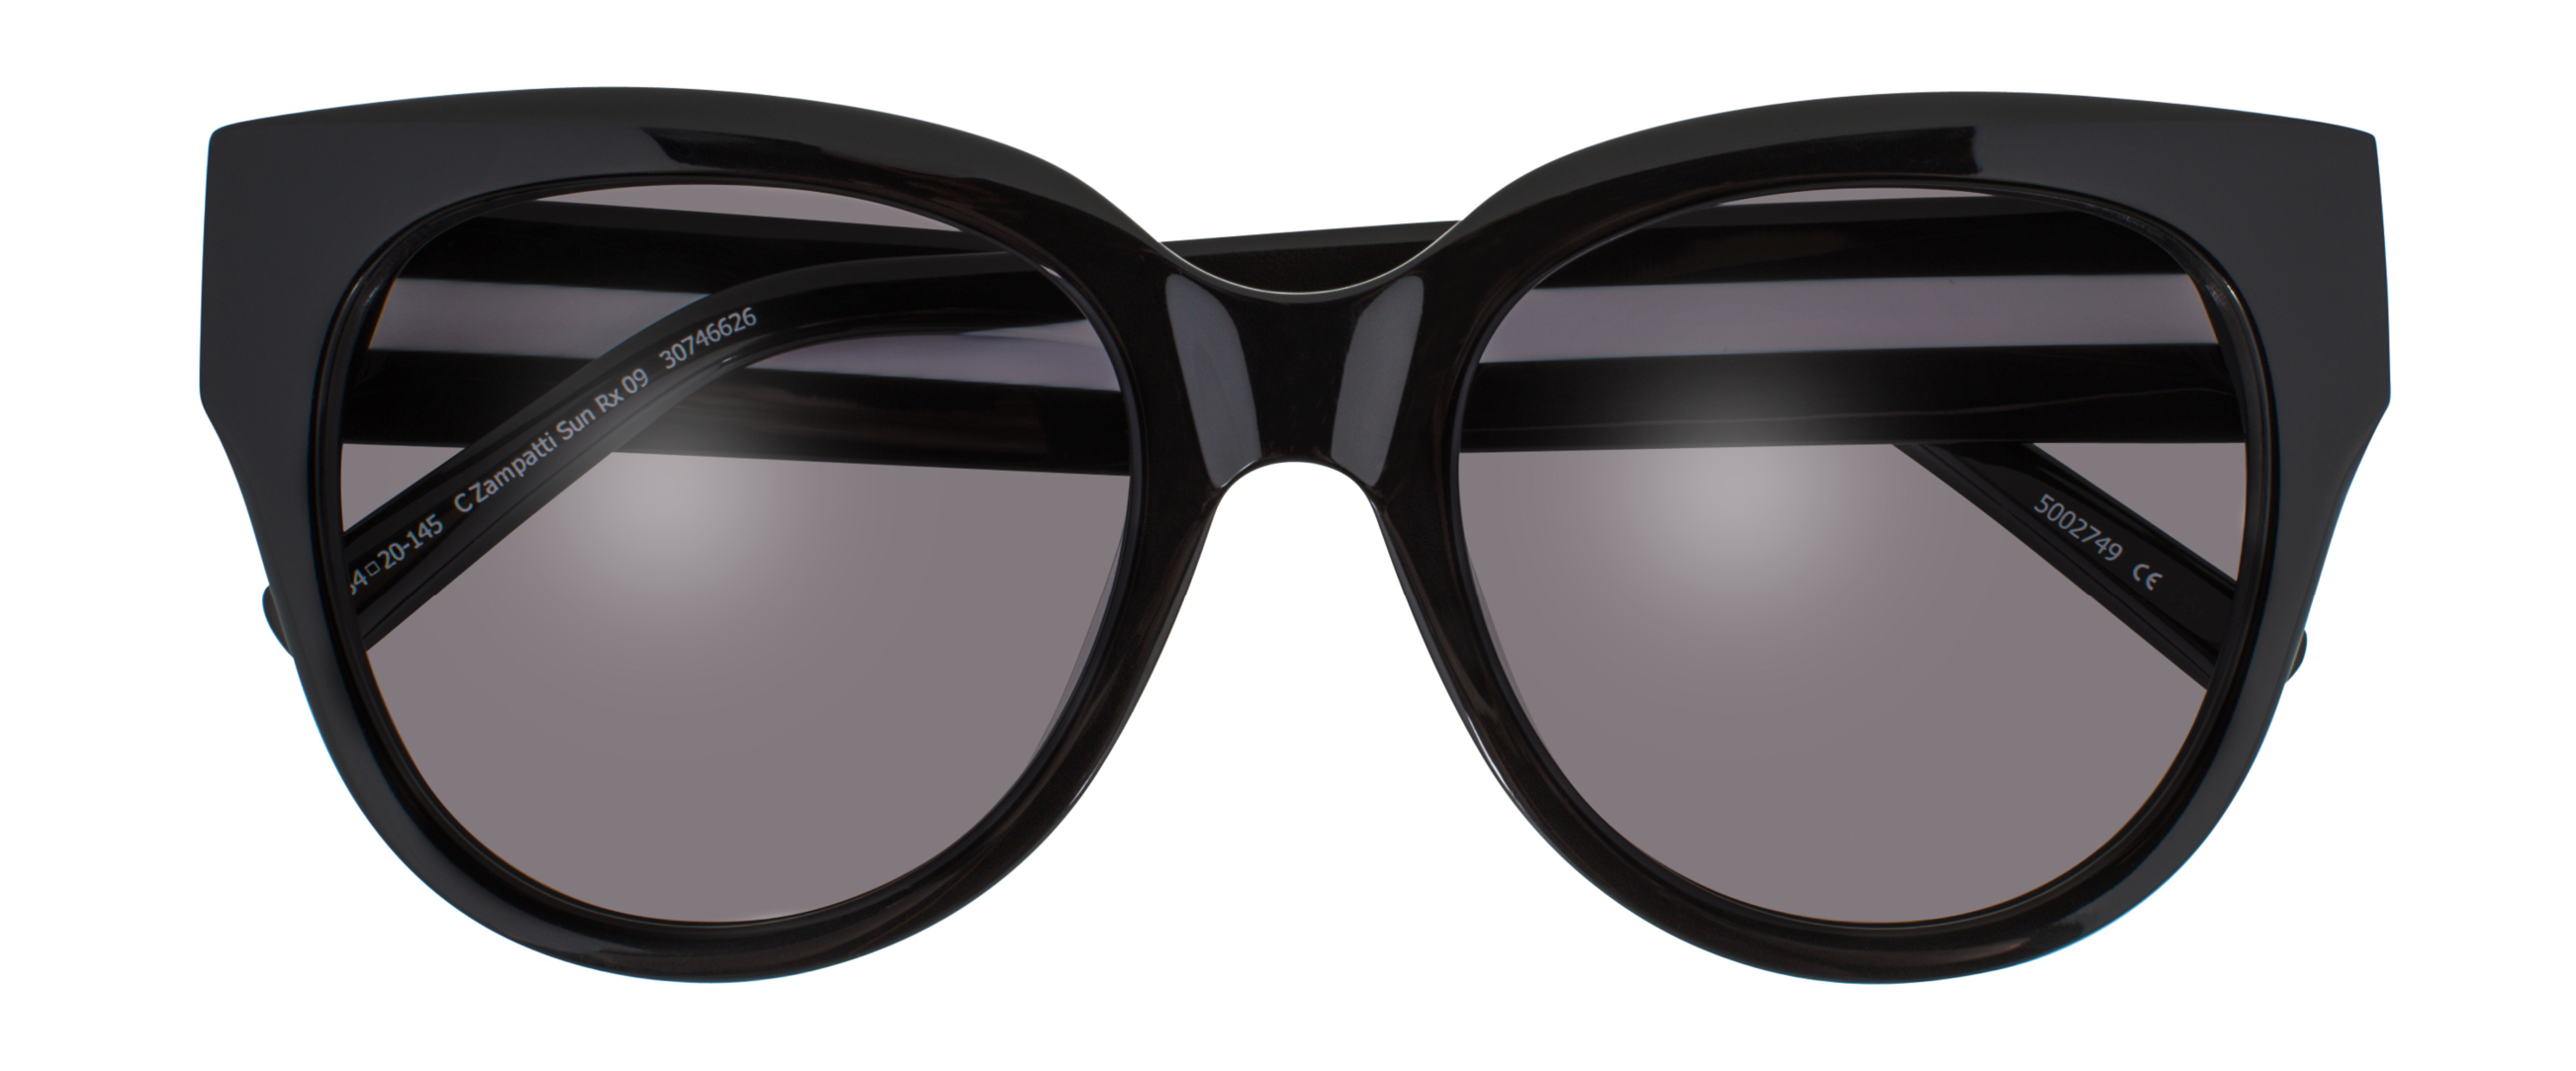 Carla Zampatti Eyewear – #LoveGlasses